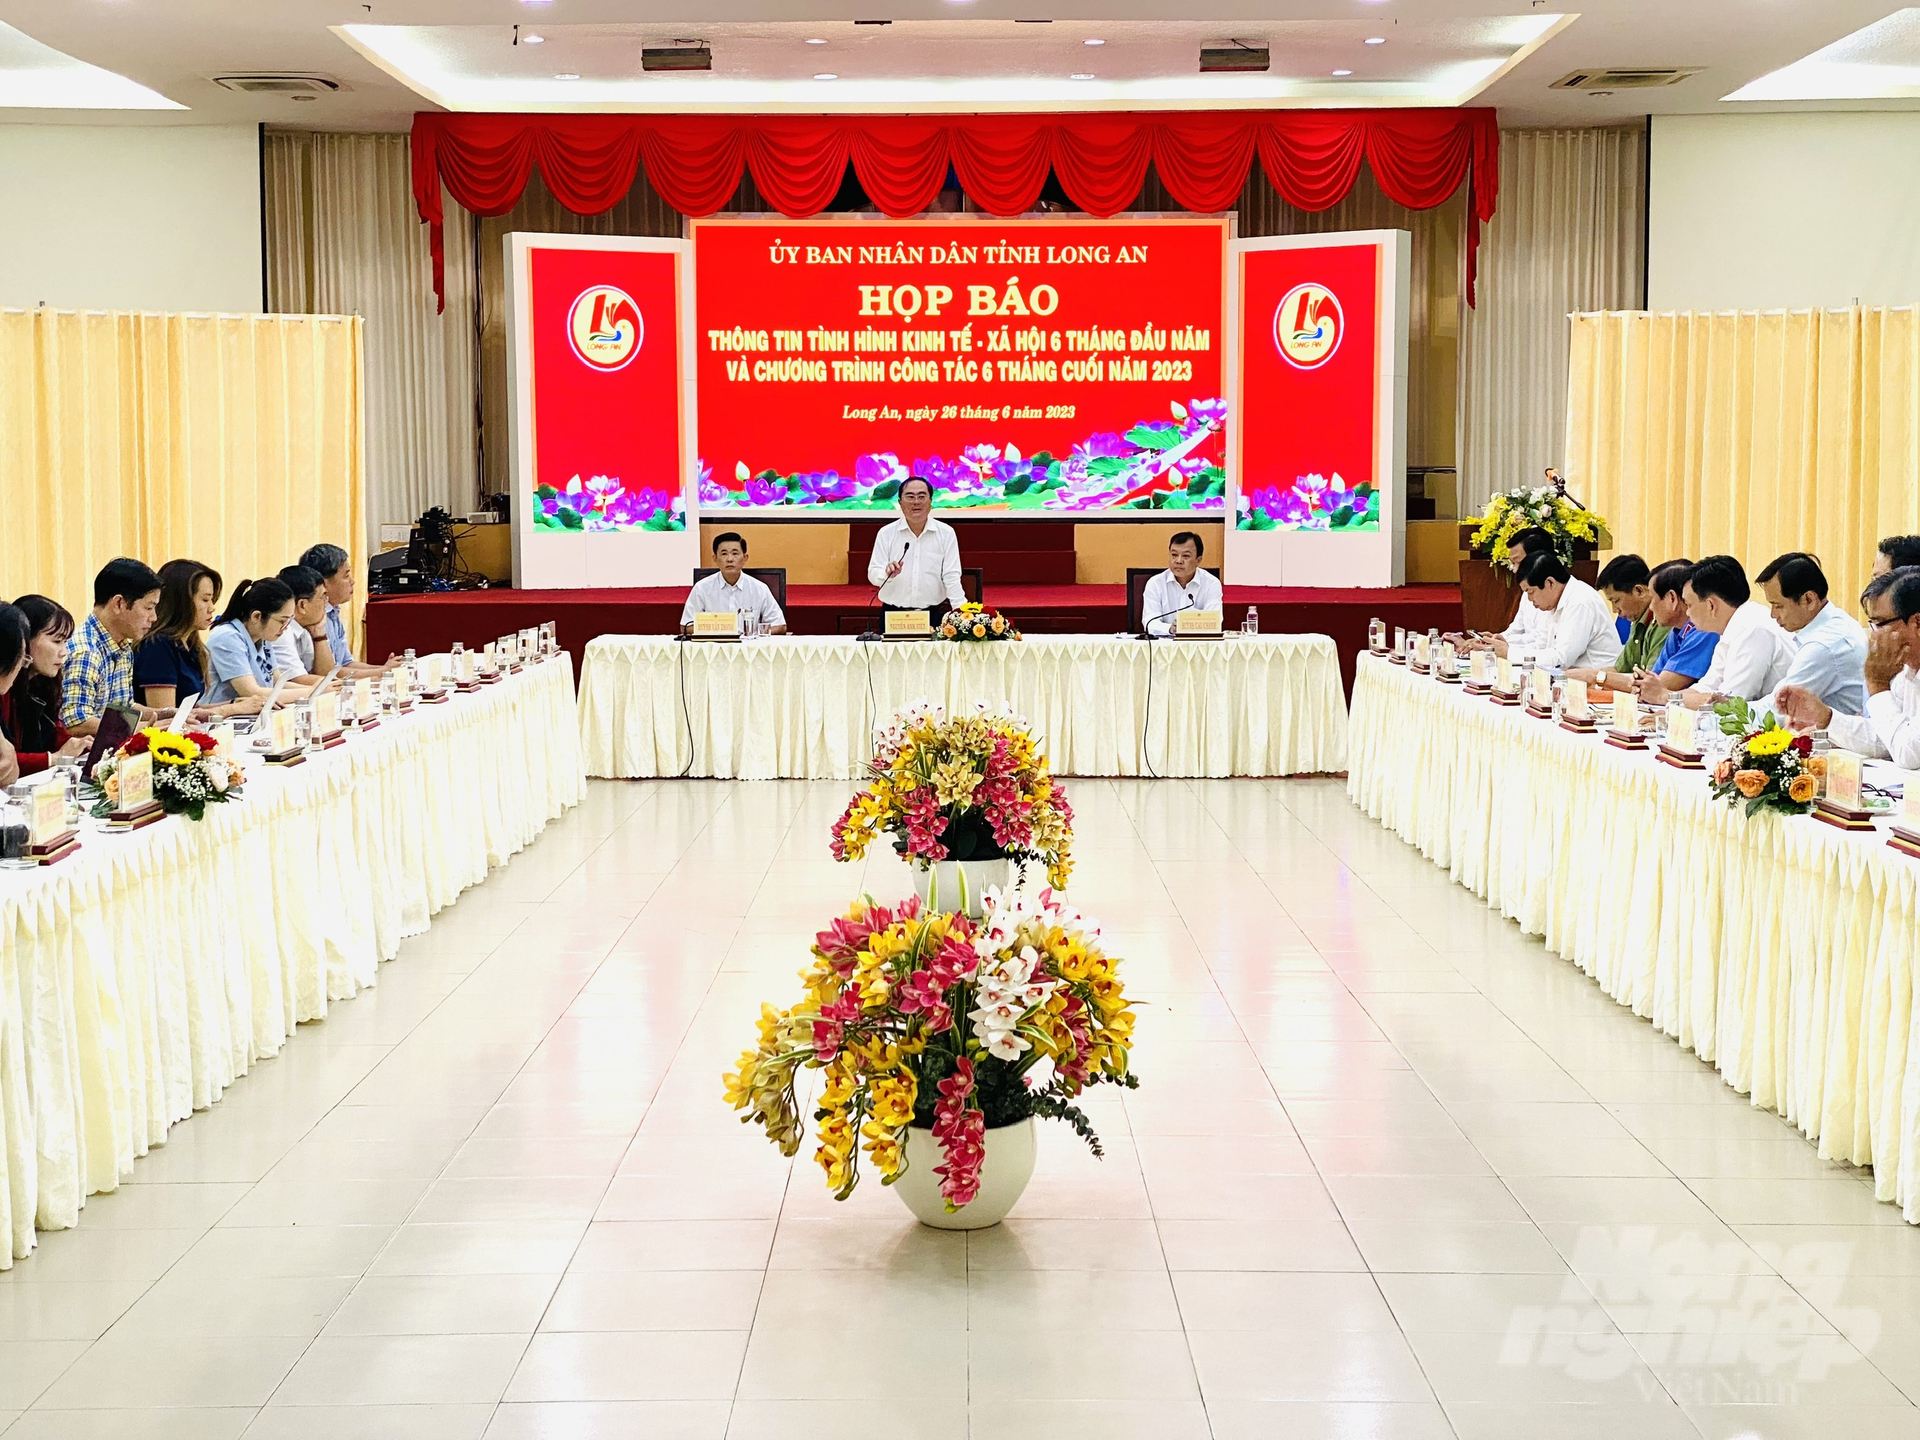 UBND tỉnh Long An tổ buổi họp báo về tình hình kinh tế - xã hội 6 tháng đầu năm và chương trình công tác 6 tháng cuối năm 2023. Ảnh: Lê Hoàng Vũ.